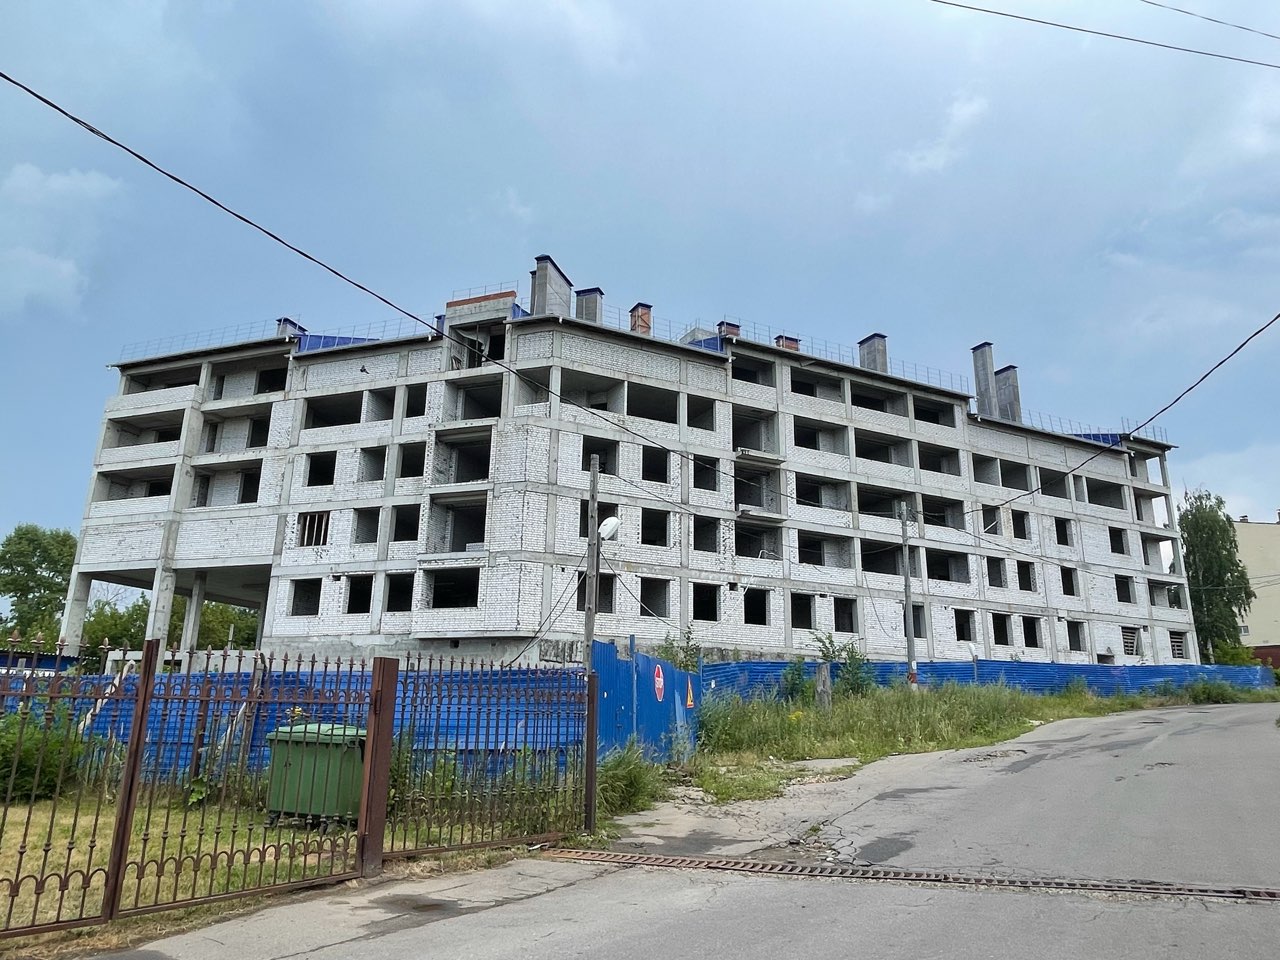 Жилые комплексы «Воскресенская слобода» и «Радуга» планируют достроить в 2022 году  - фото 1